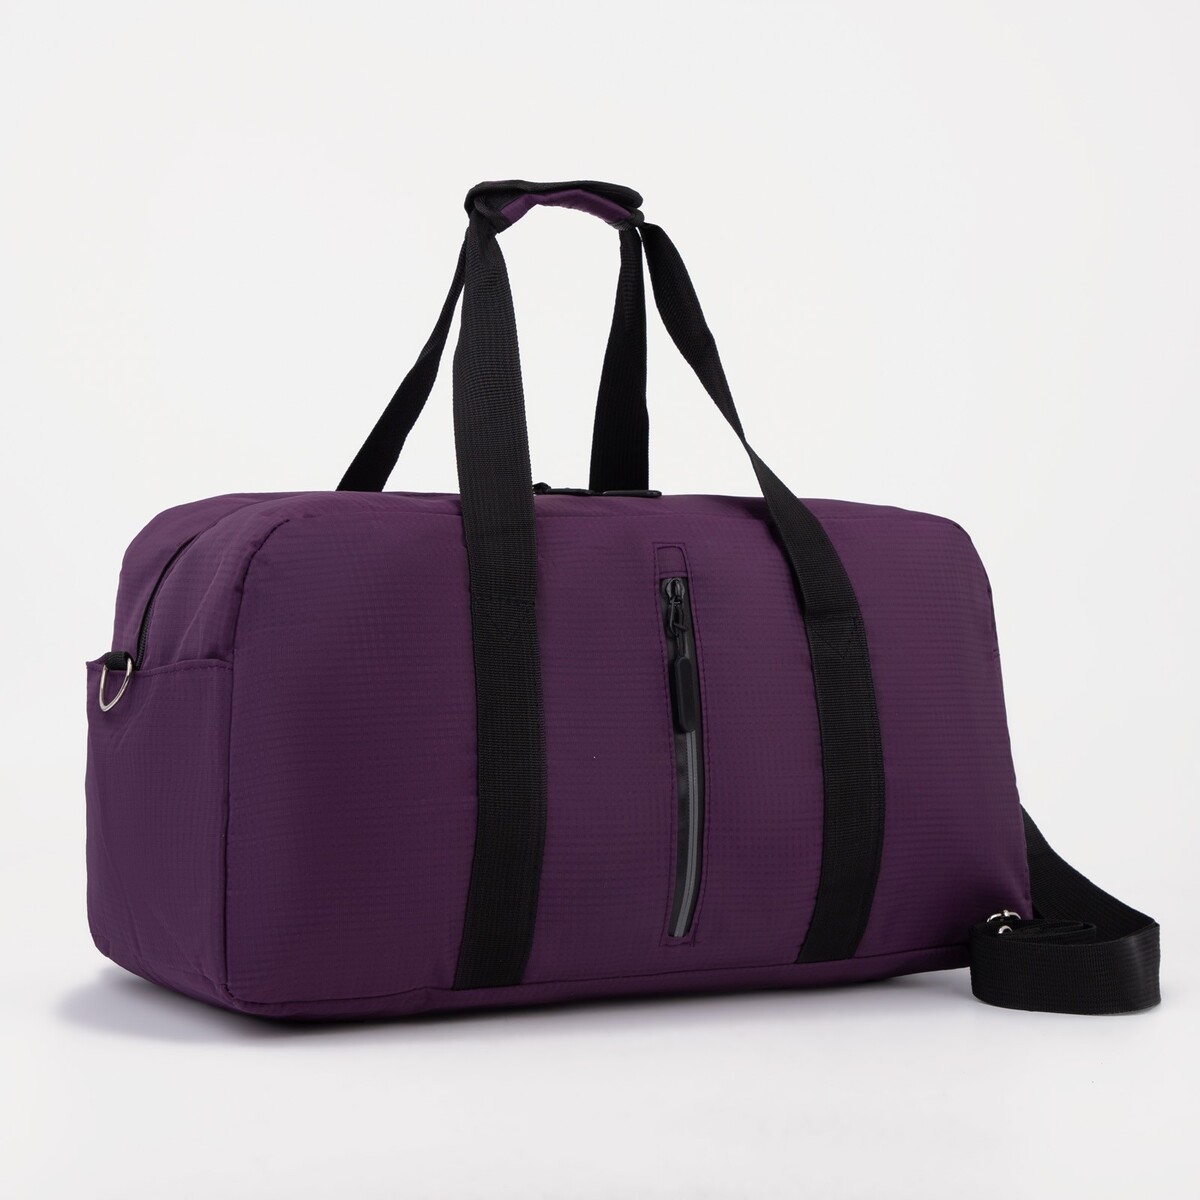 Сумка спортивная на молнии, 2 наружных кармана, цвет фиолетовый сумка спортивная на молнии 2 наружных кармана фиолетовый